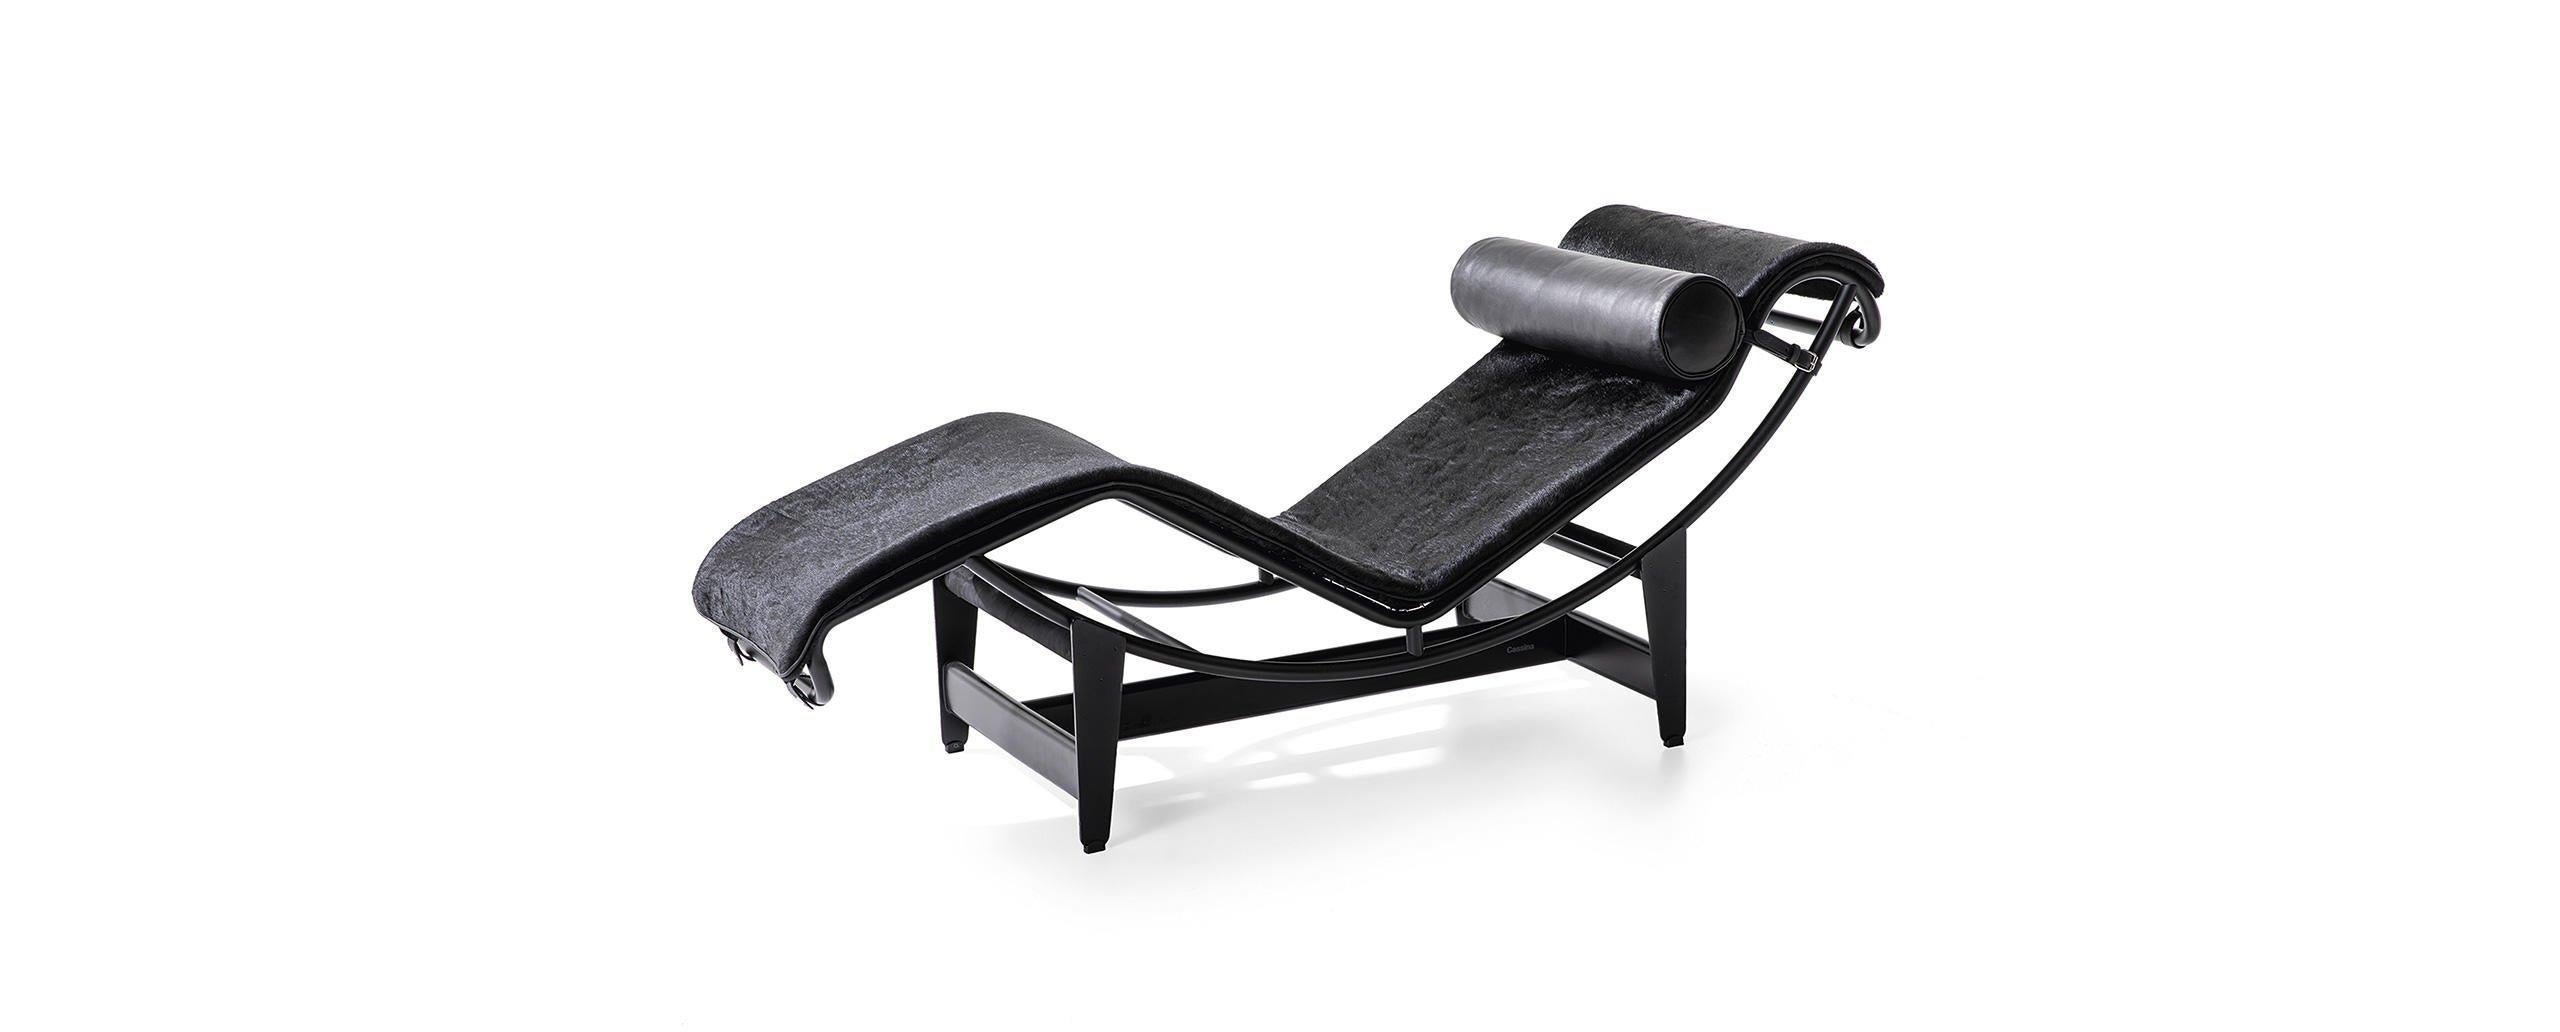 Chaise longue conçue par Le Corbusier, Pierre Jeanneret, Charlotte Perriand en 1965. Relancé en 2019.
Fabriqué par Cassina en Italie.

L'un des best-sellers mondiaux de Cassina, la LC4 est la quintessence de la chaise longue. Conçue en 1928, elle